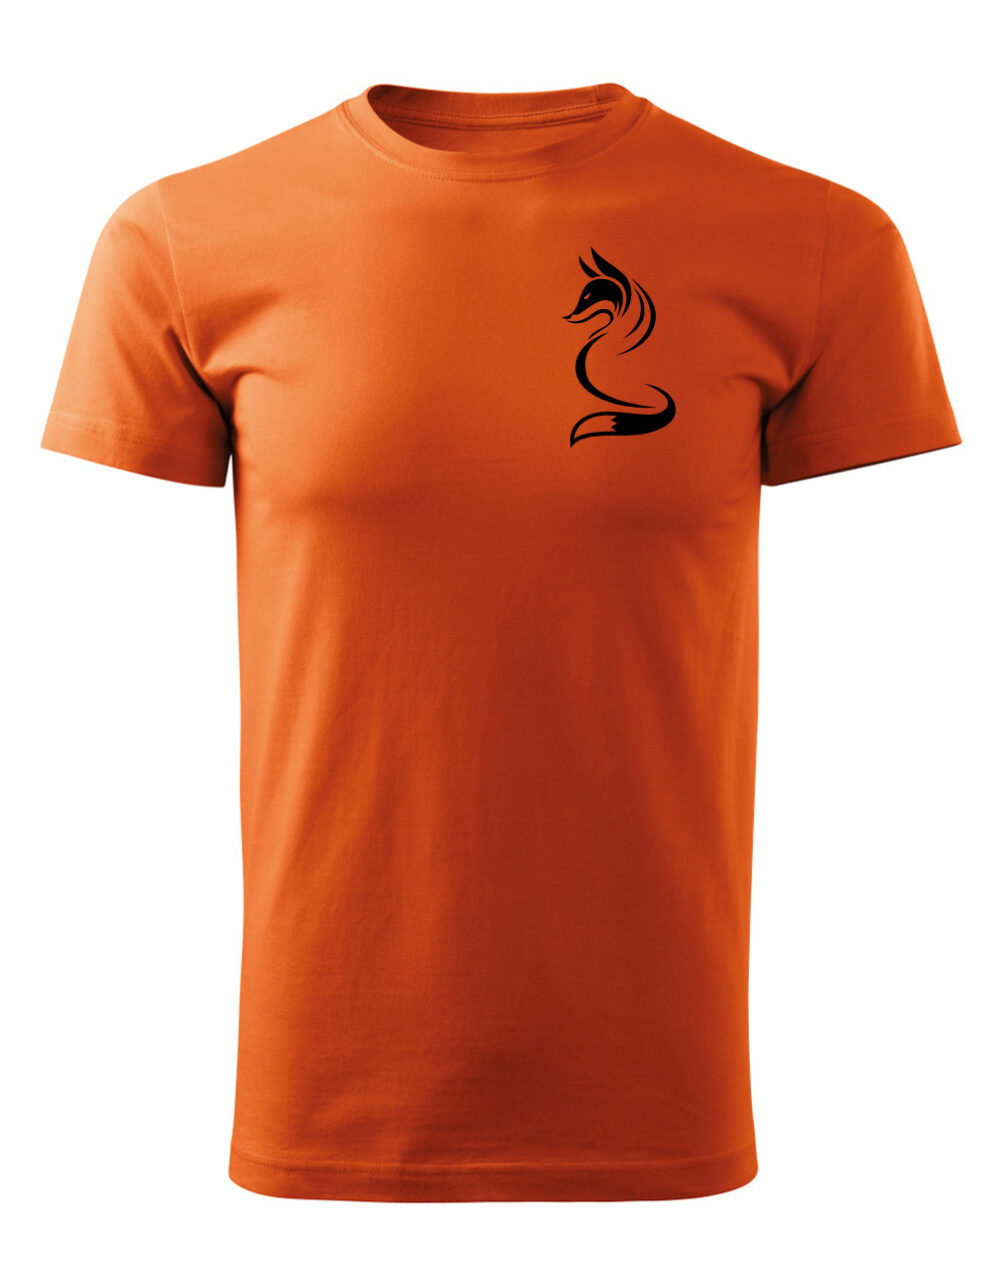 Pánské tričko s potiskem Liška oranžová